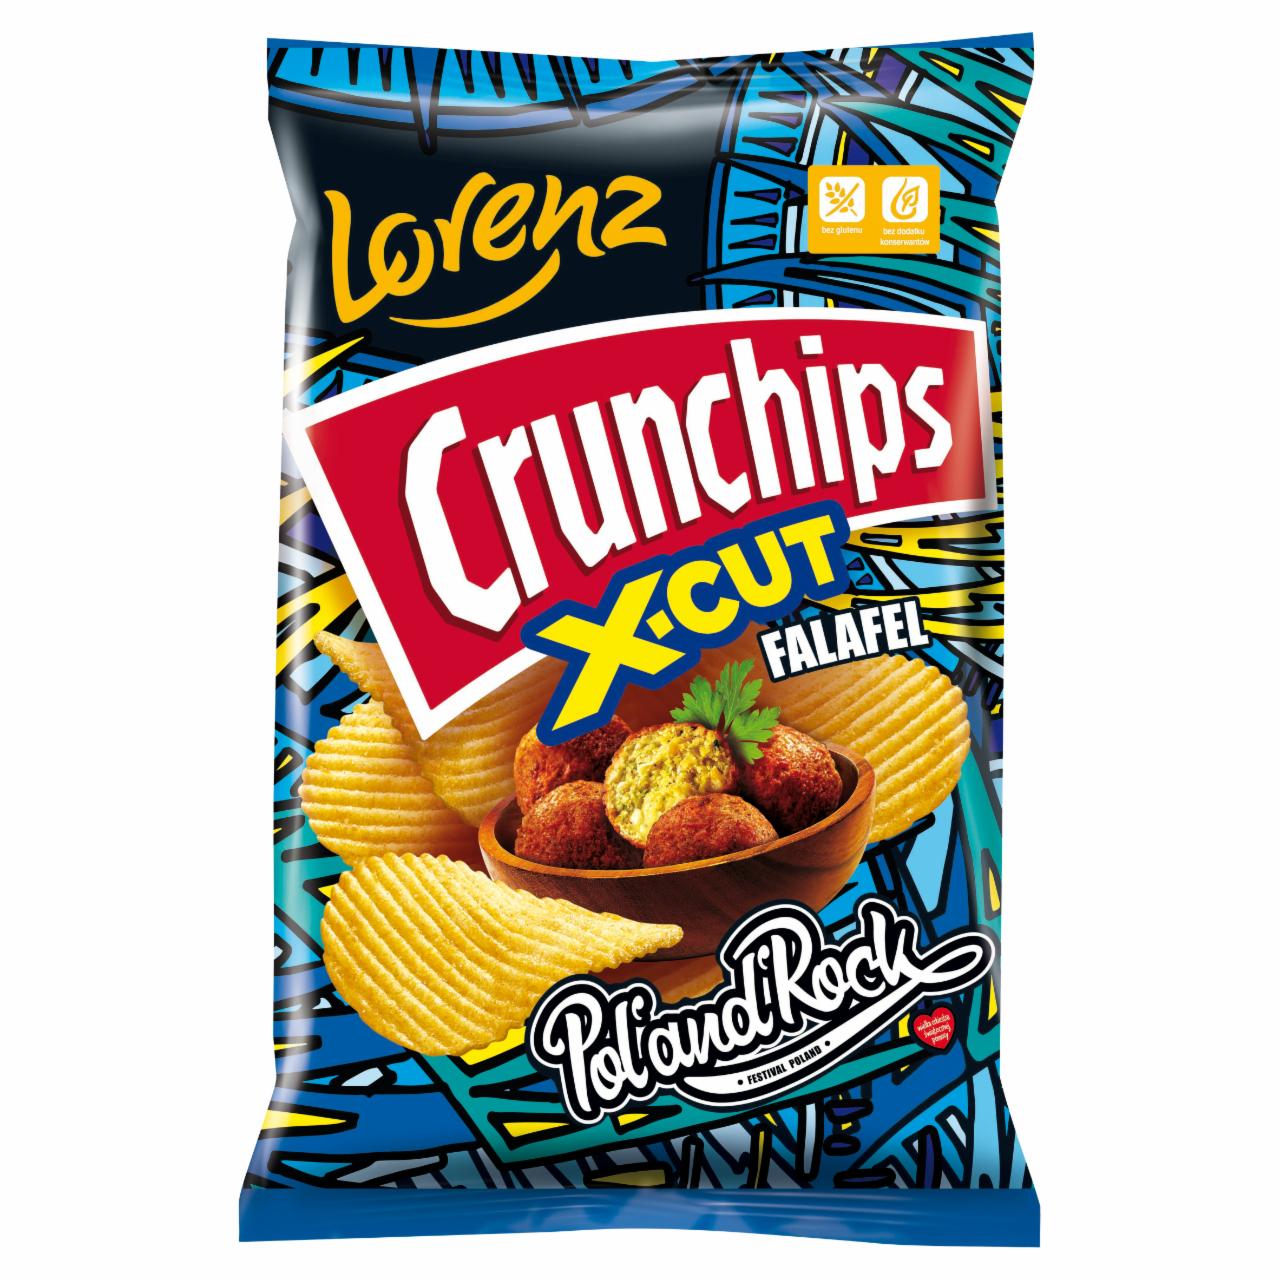 Zdjęcia - Crunchips X-Cut Chipsy ziemniaczane grubo krojone o smaku falafela 130 g